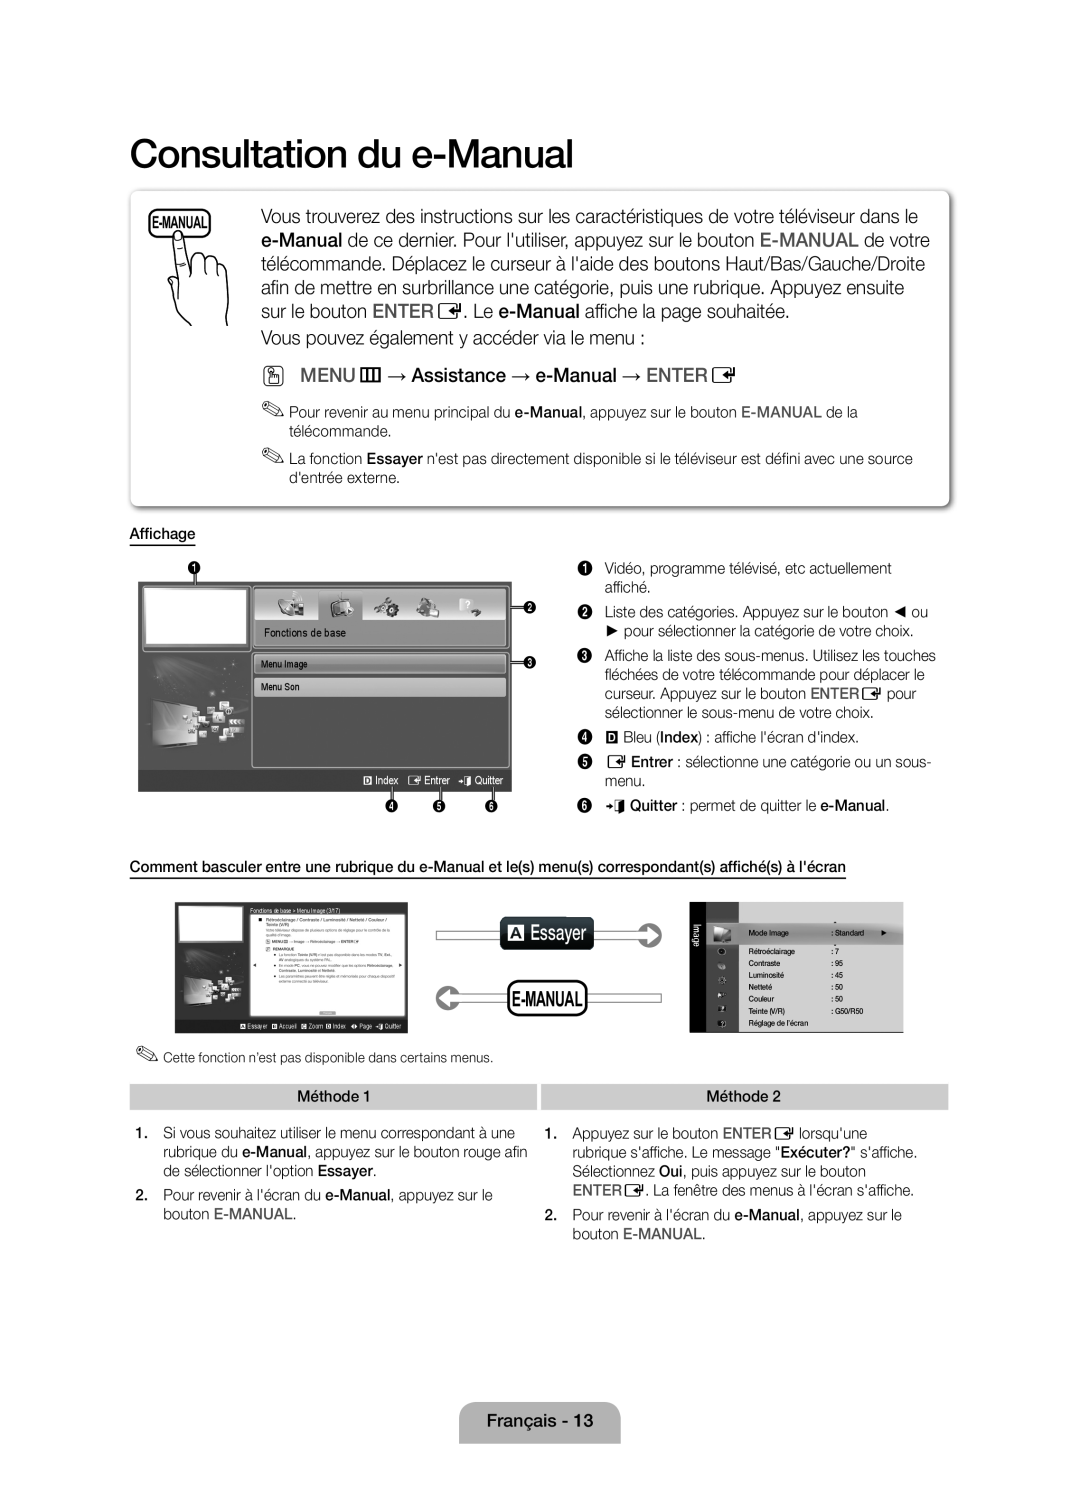 Samsung UE32D5000PWXXC Consultation du e-Manual, aEssayer, sur le bouton ENTER E. Le e-Manual affiche la page souhaitée 